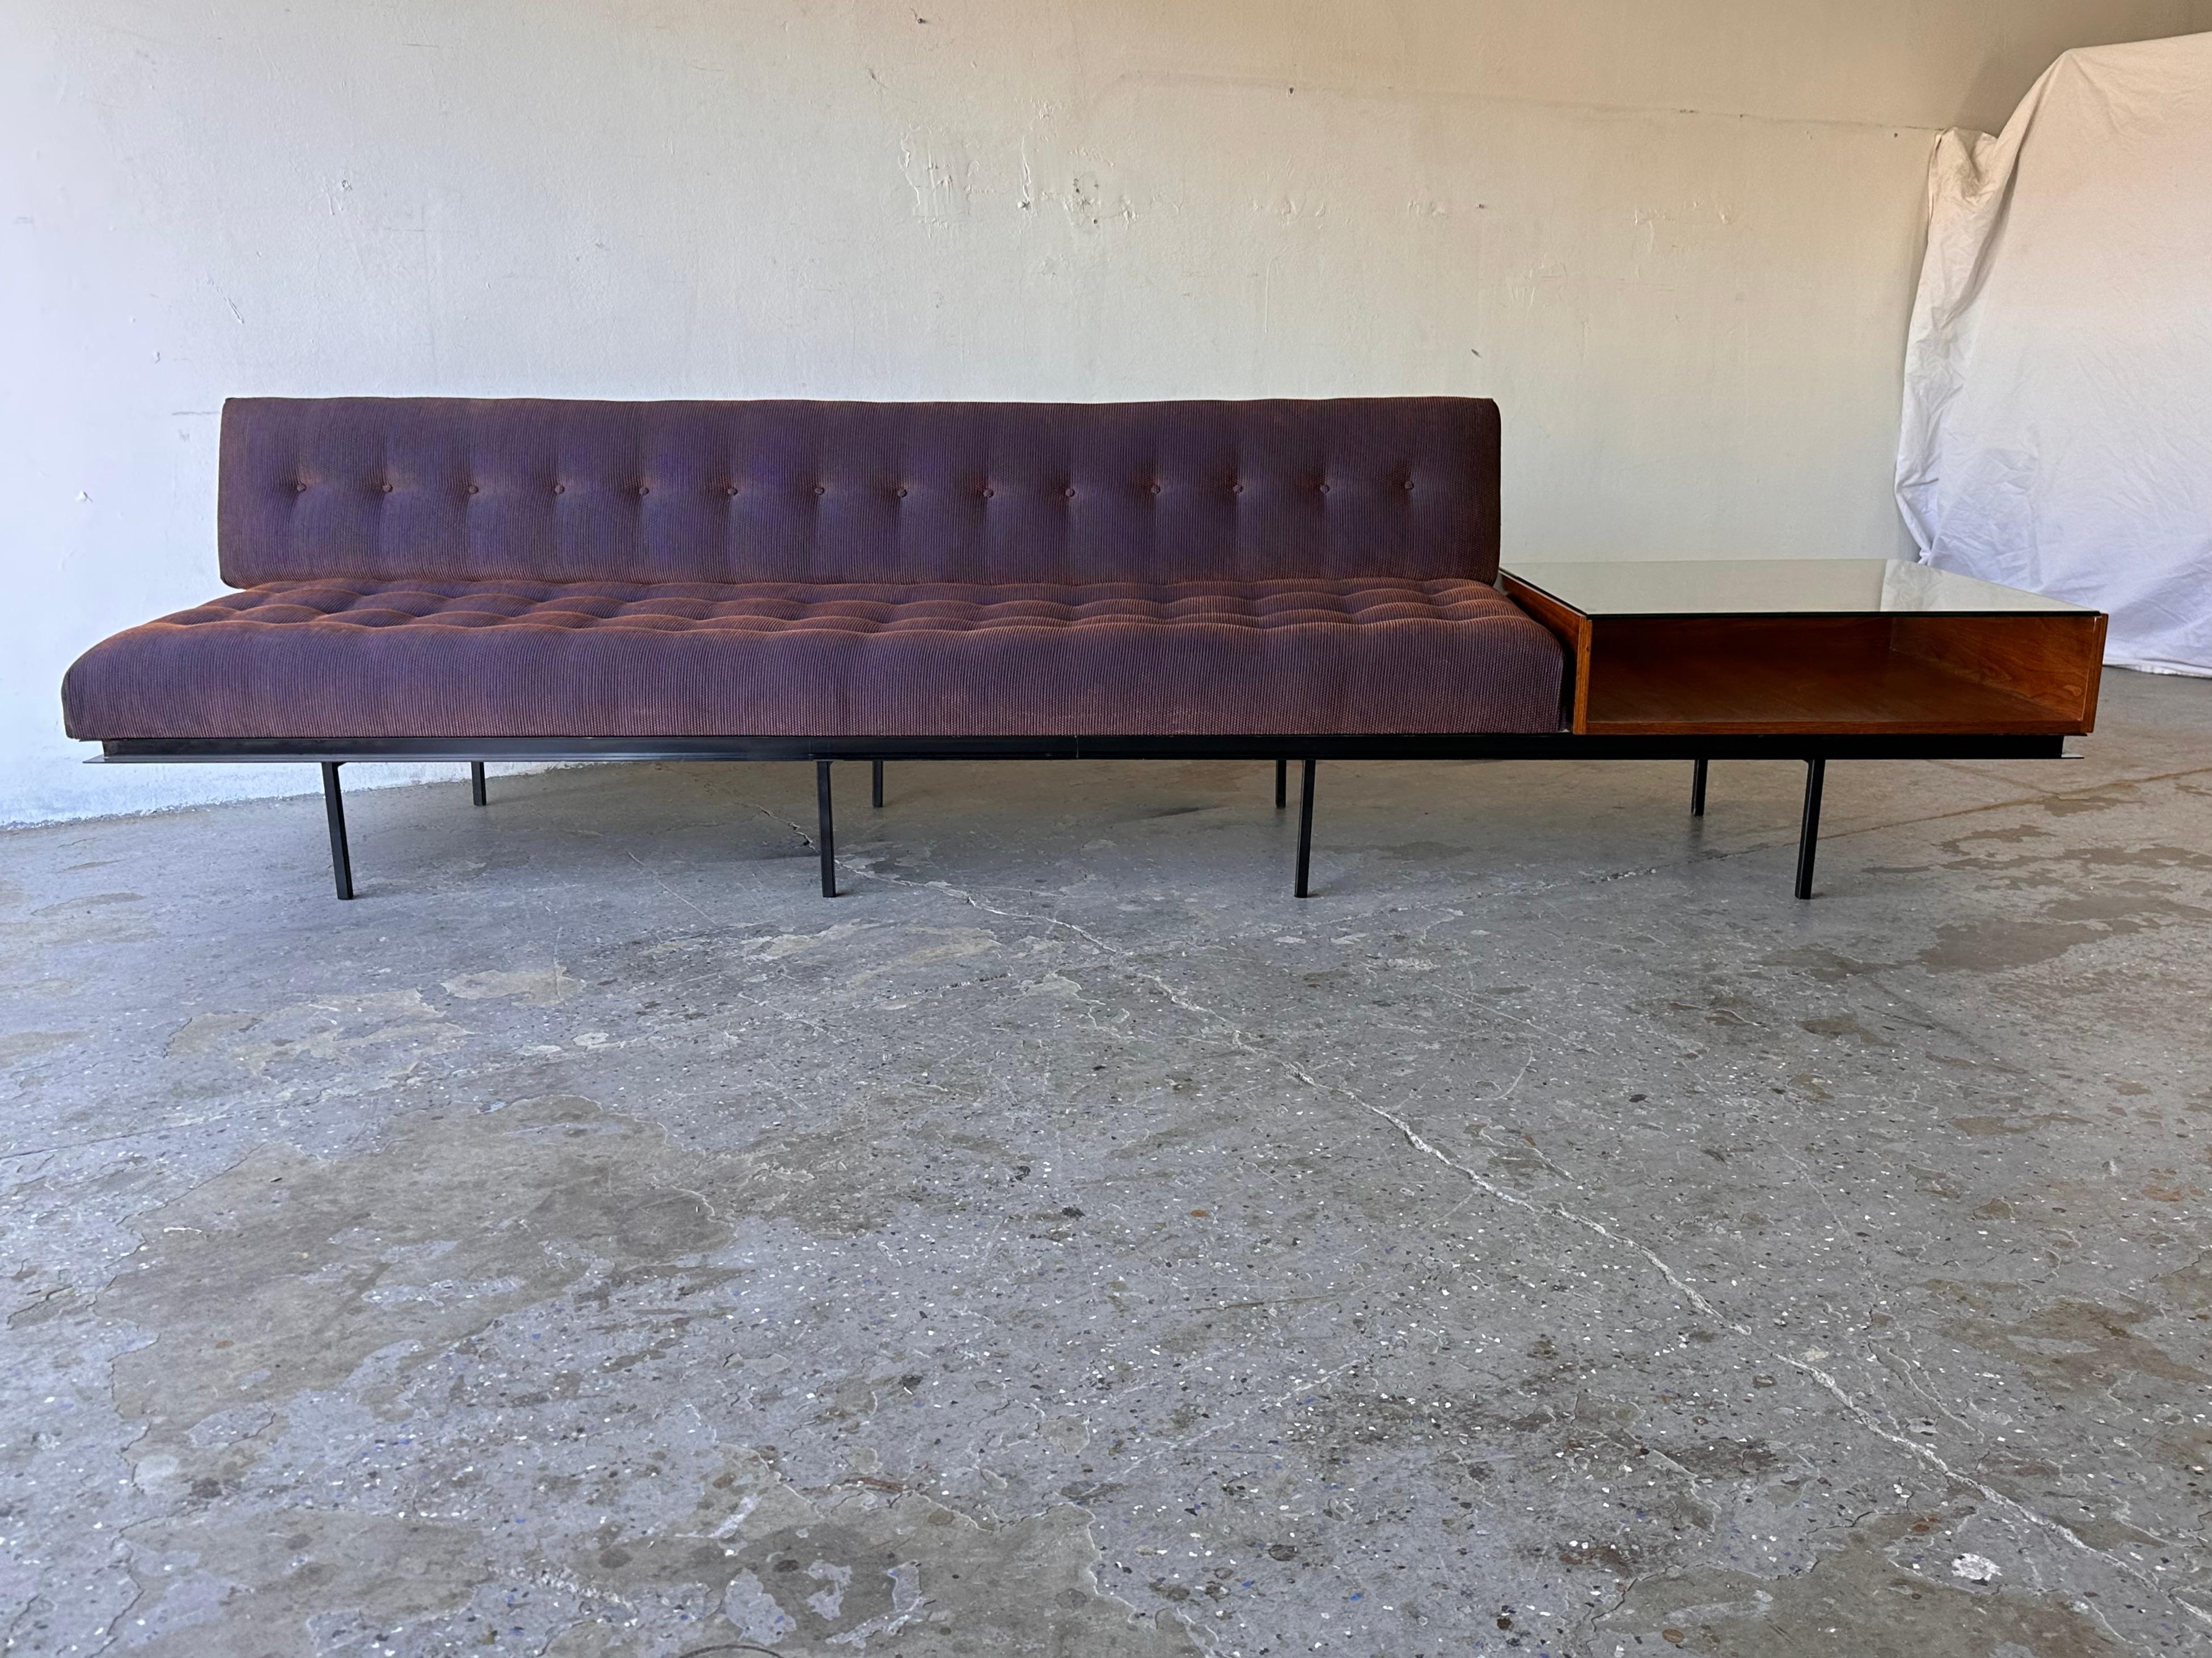 Authentisches frühes Sofa und Beistelltisch, entworfen von Florence Knoll Mitte der 1950er Jahre. Sie bietet eine  Stahlrahmen mit acht quadratischen Rohrbeinen und einem aufgesetzten Nussbaumtisch mit Glasplatte. Der schillernde Stoff hat violette